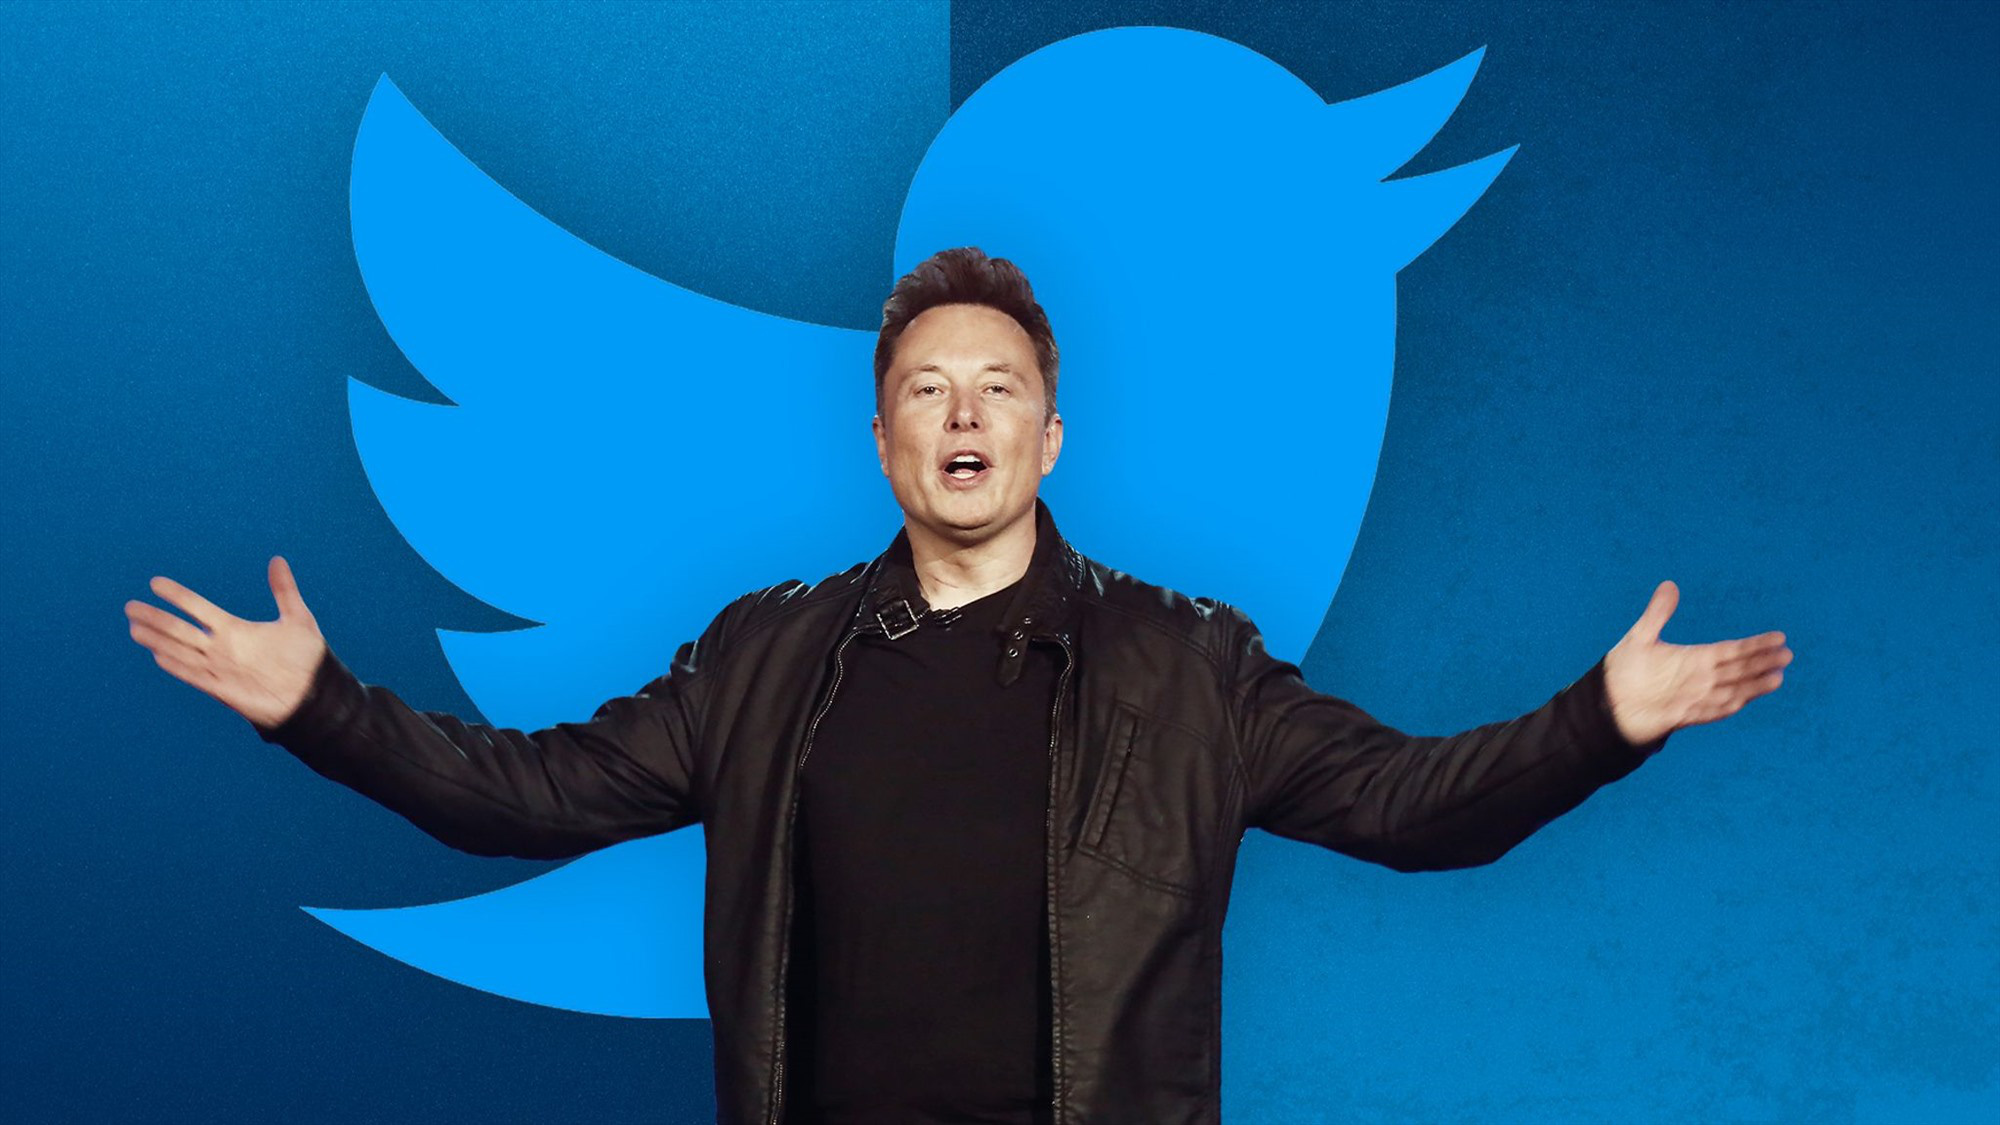 Lượng người dùng Twitter tăng đột biến, Elon Musk đăng hơn 750 Tweet/tháng - Ảnh 1.